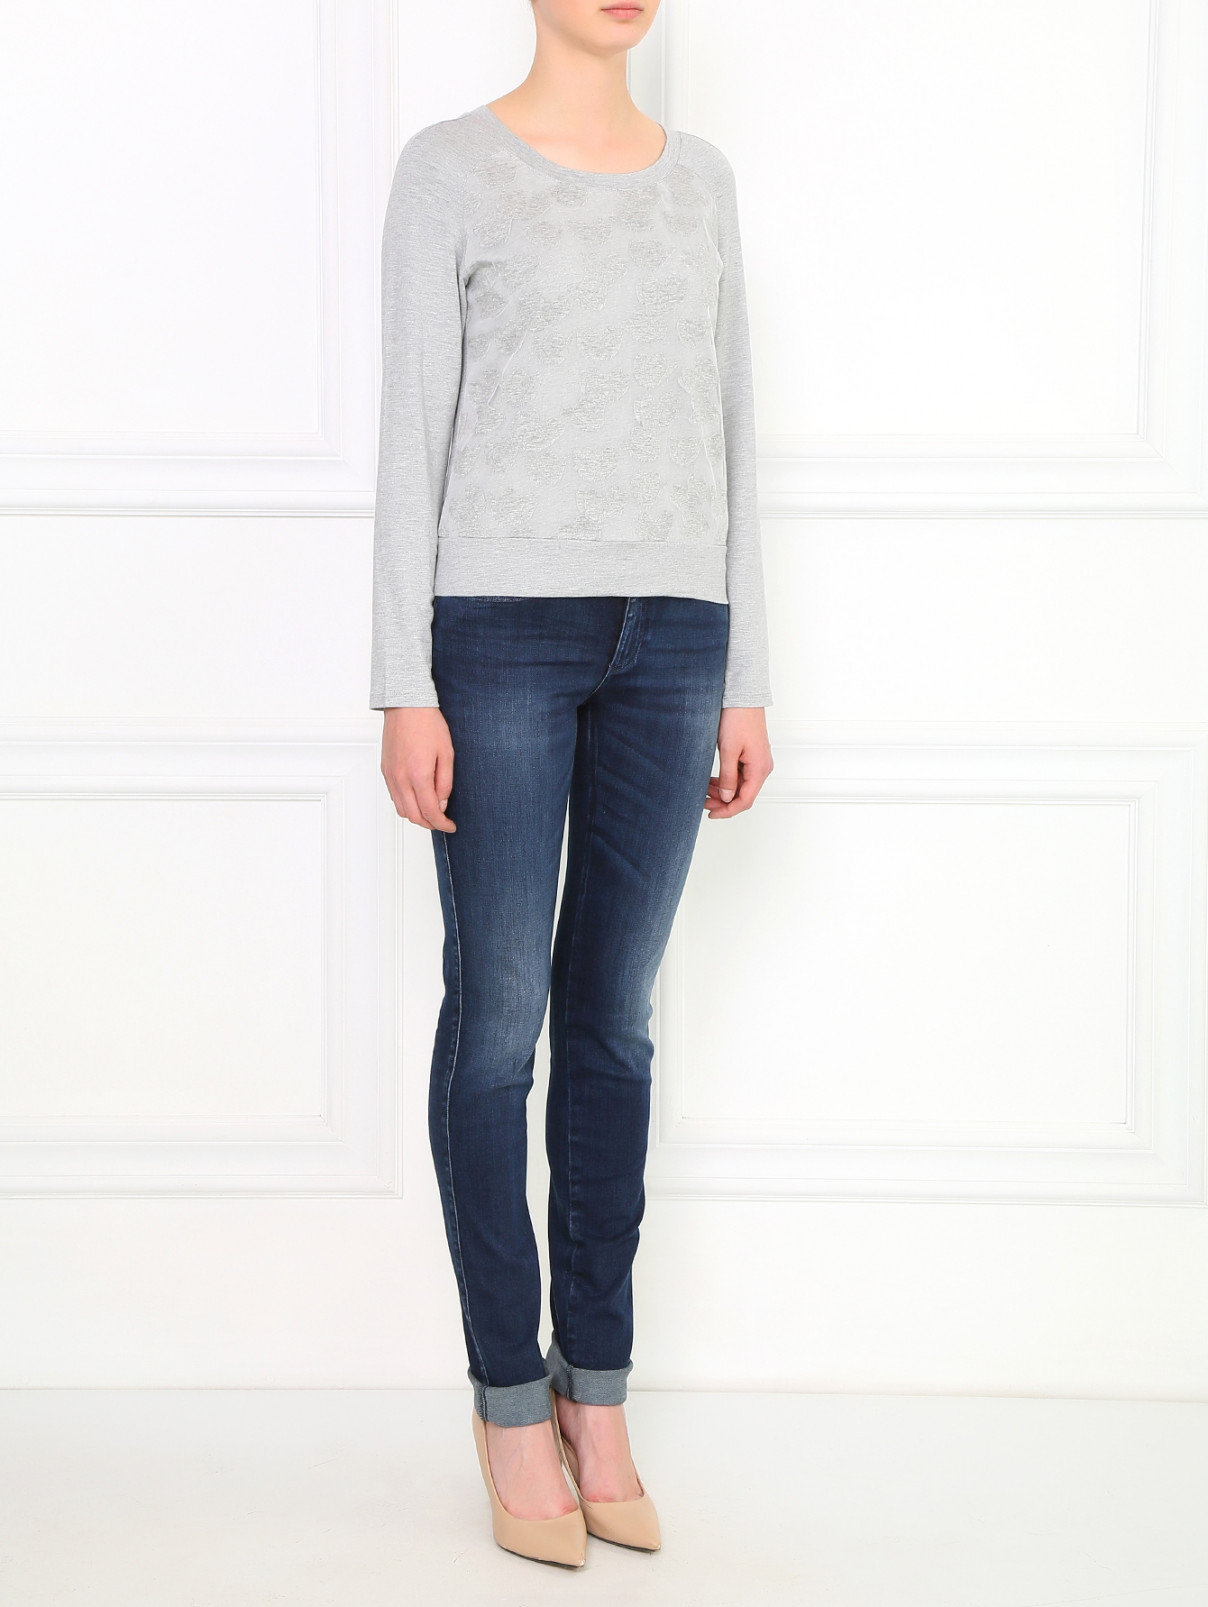 Джемпер из хлопка с аппликацией Armani Jeans  –  Модель Общий вид  – Цвет:  Серый